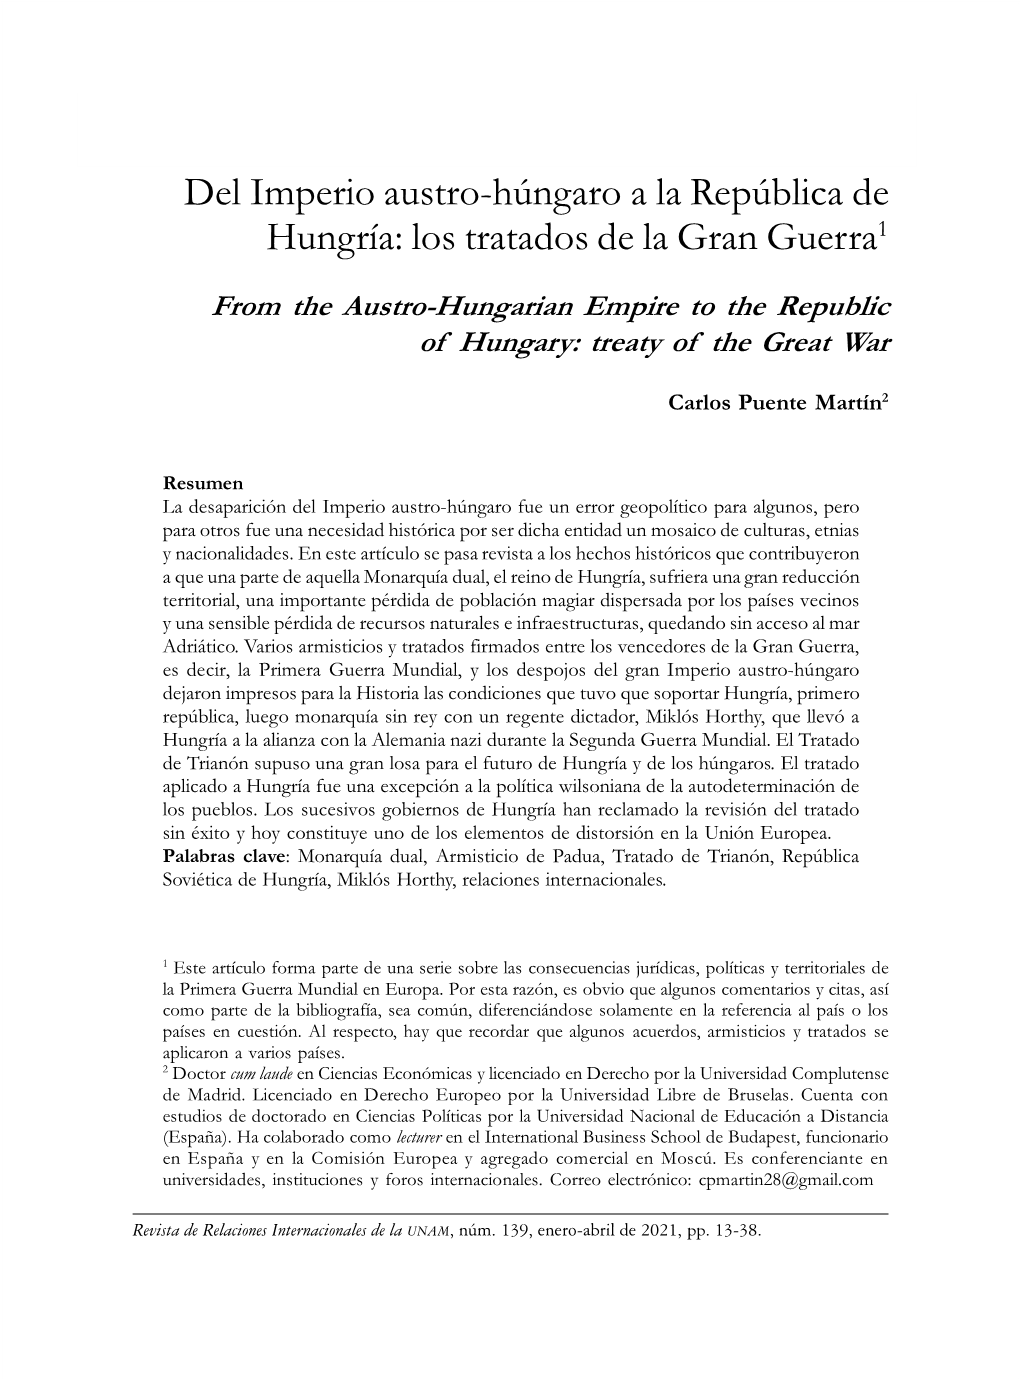 Del Imperio Austro-Húngaro a La República De Hungría: Los Tratados De La Gran Guerra1